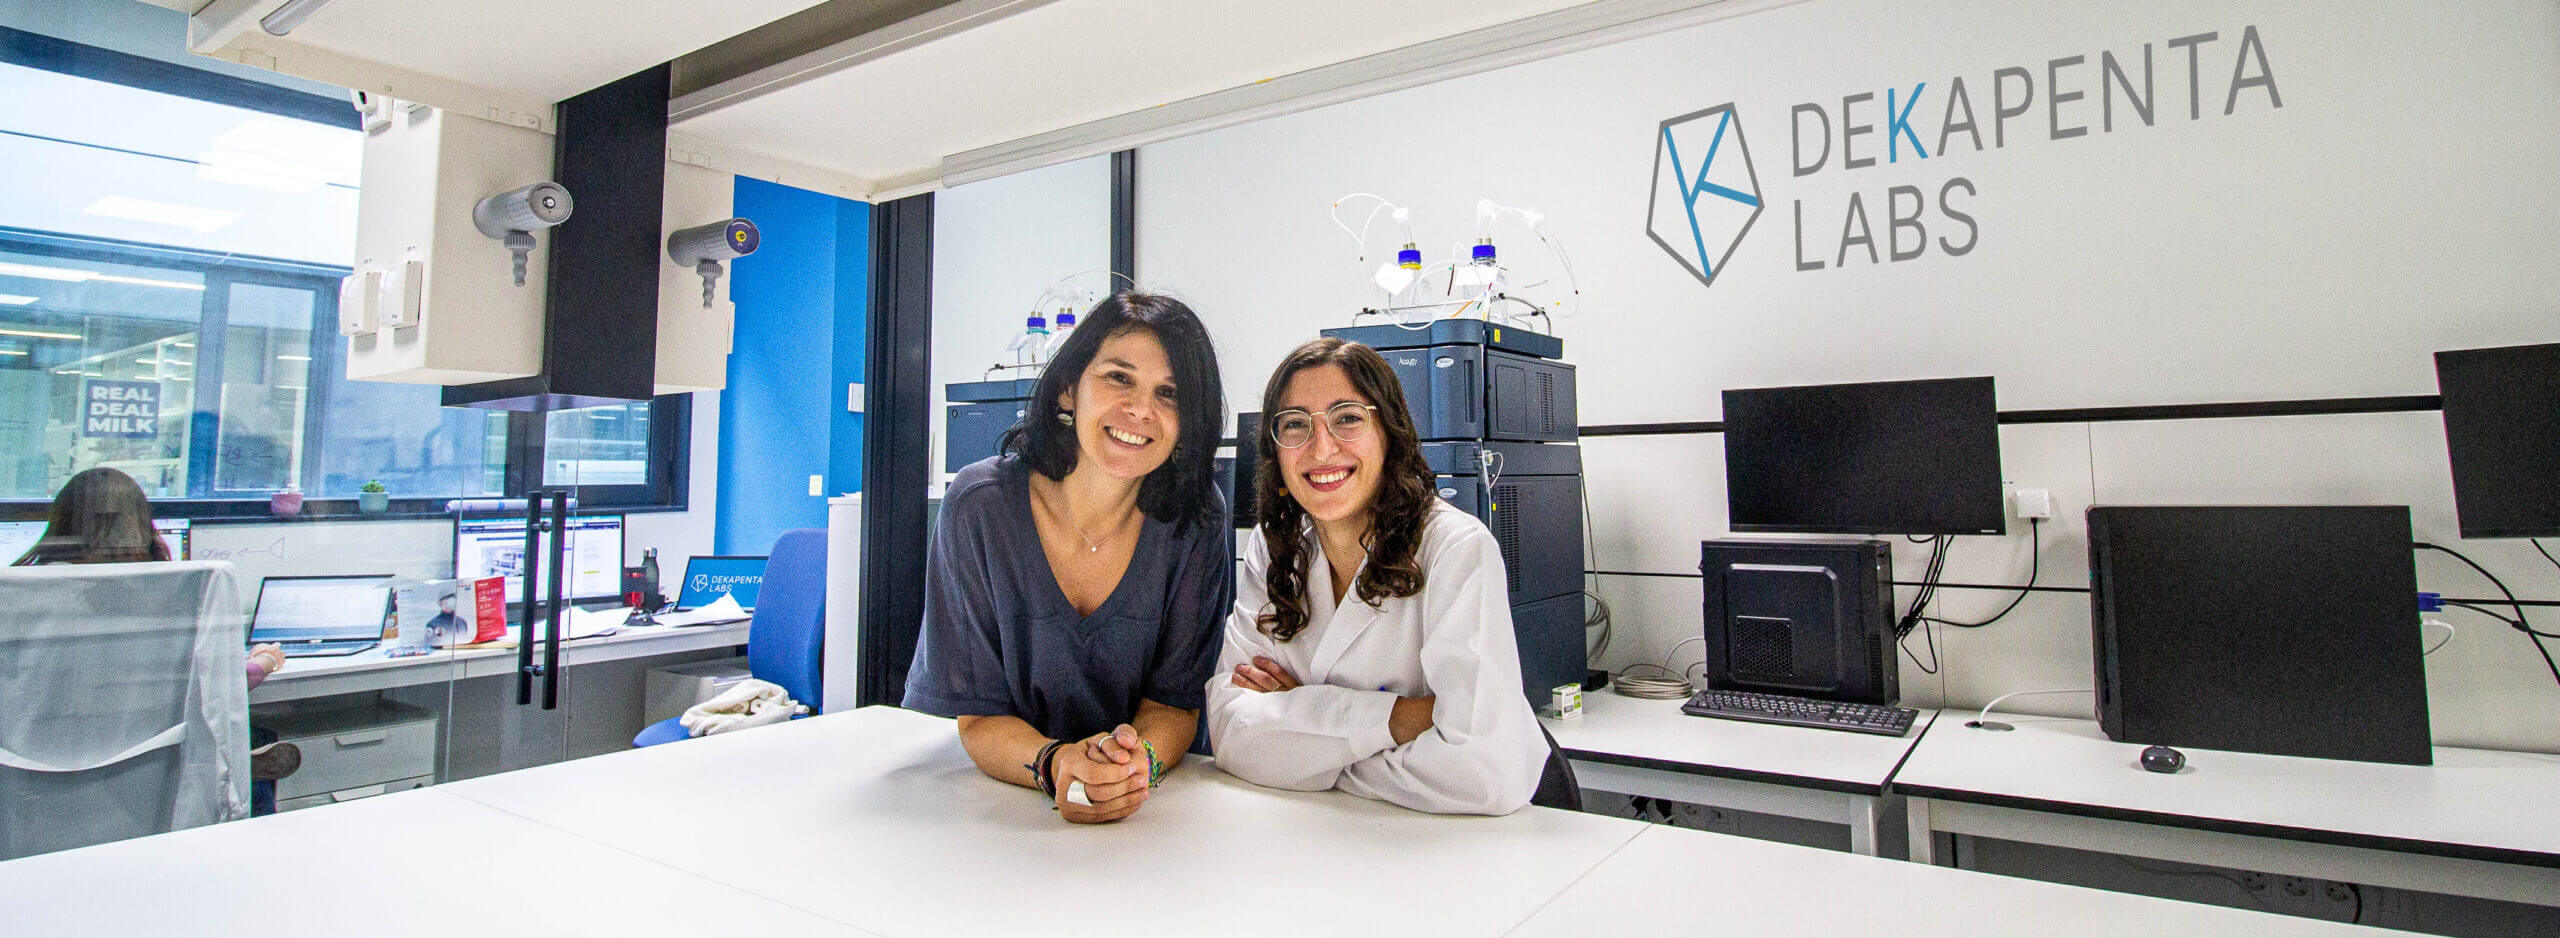 La CRO de servicios analíticos Dekapenta Labs arranca en el Parque Científico de Barcelona